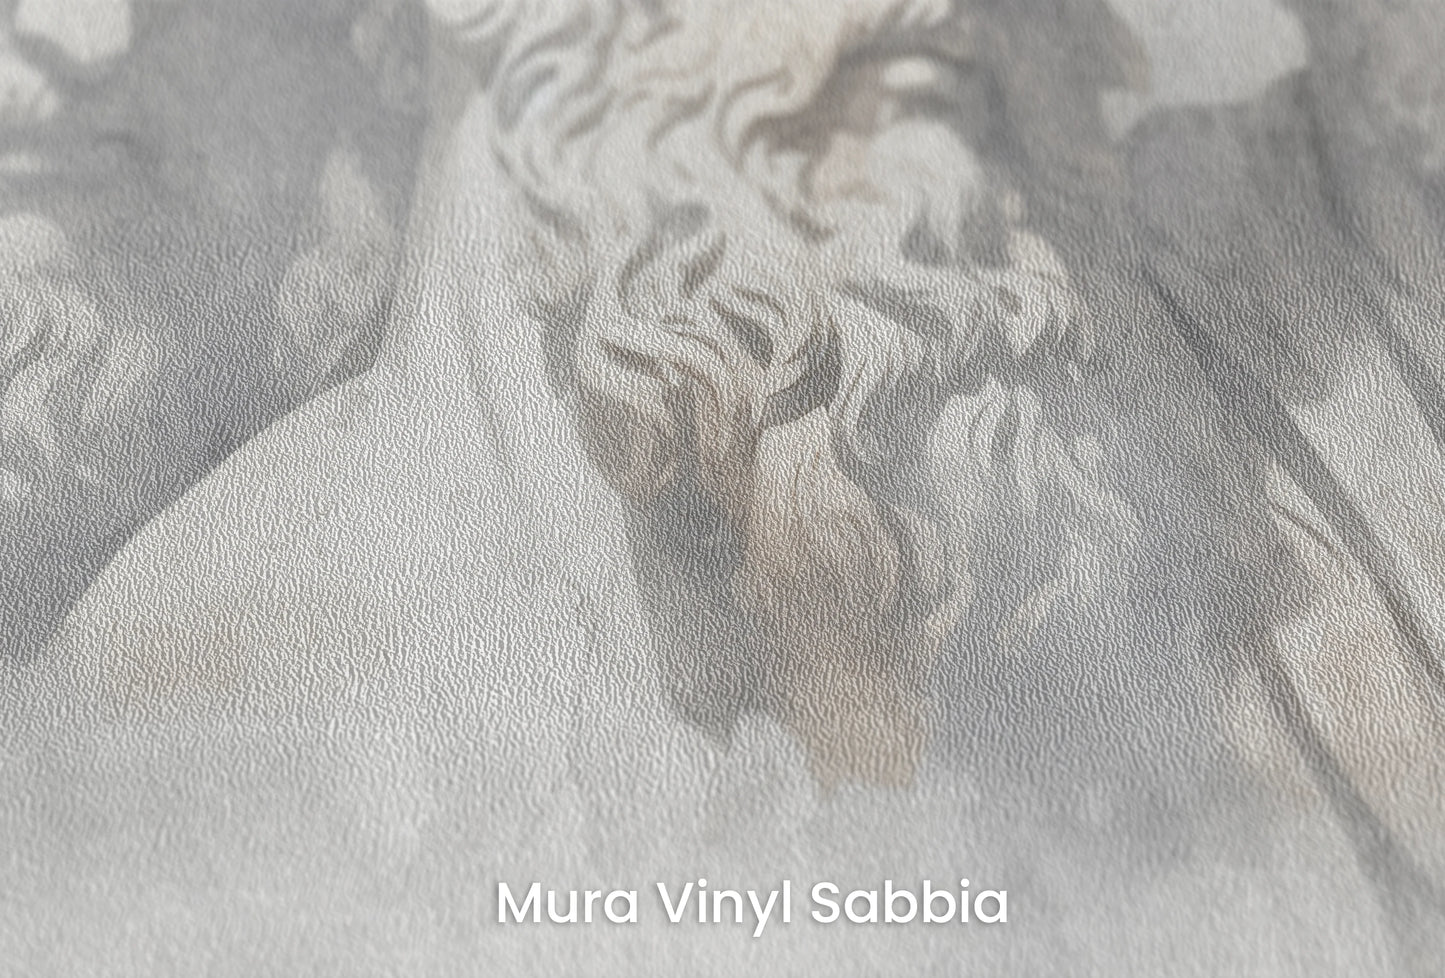 Zbliżenie na artystyczną fototapetę o nazwie Wisdom in the Shadows na podłożu Mura Vinyl Sabbia struktura grubego ziarna piasku.